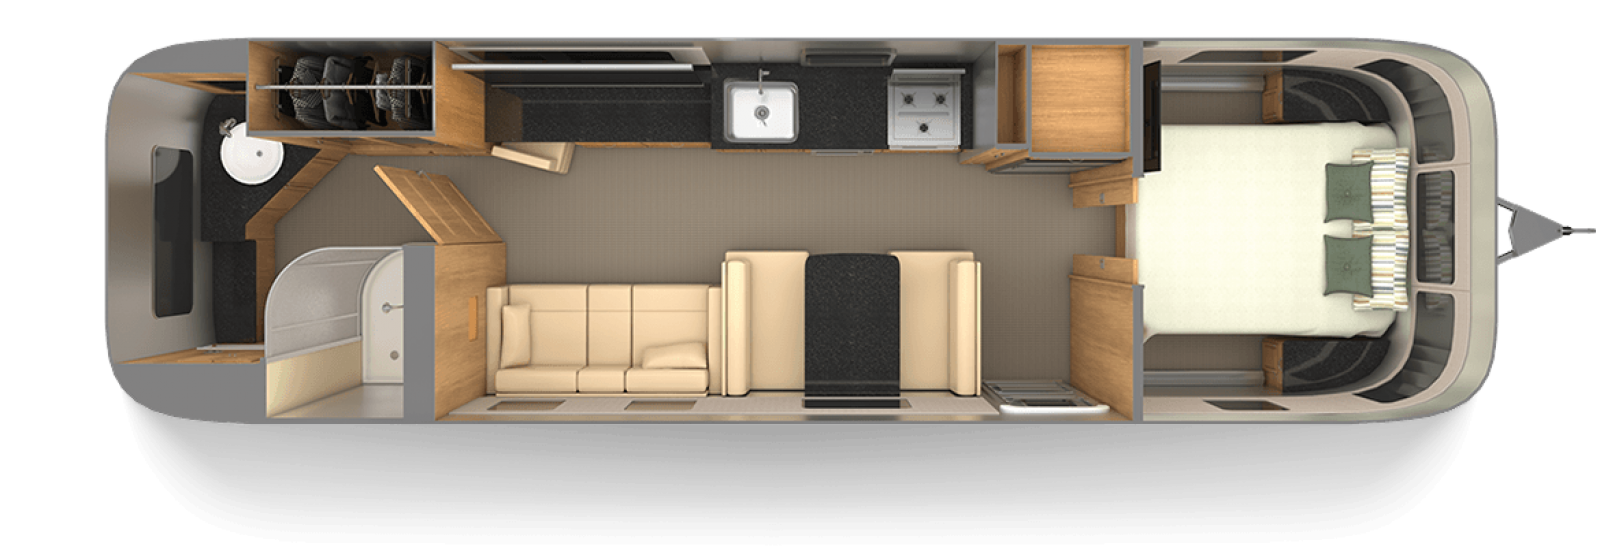 Classic 33FB Floor Plan Travel Trailers Airstream